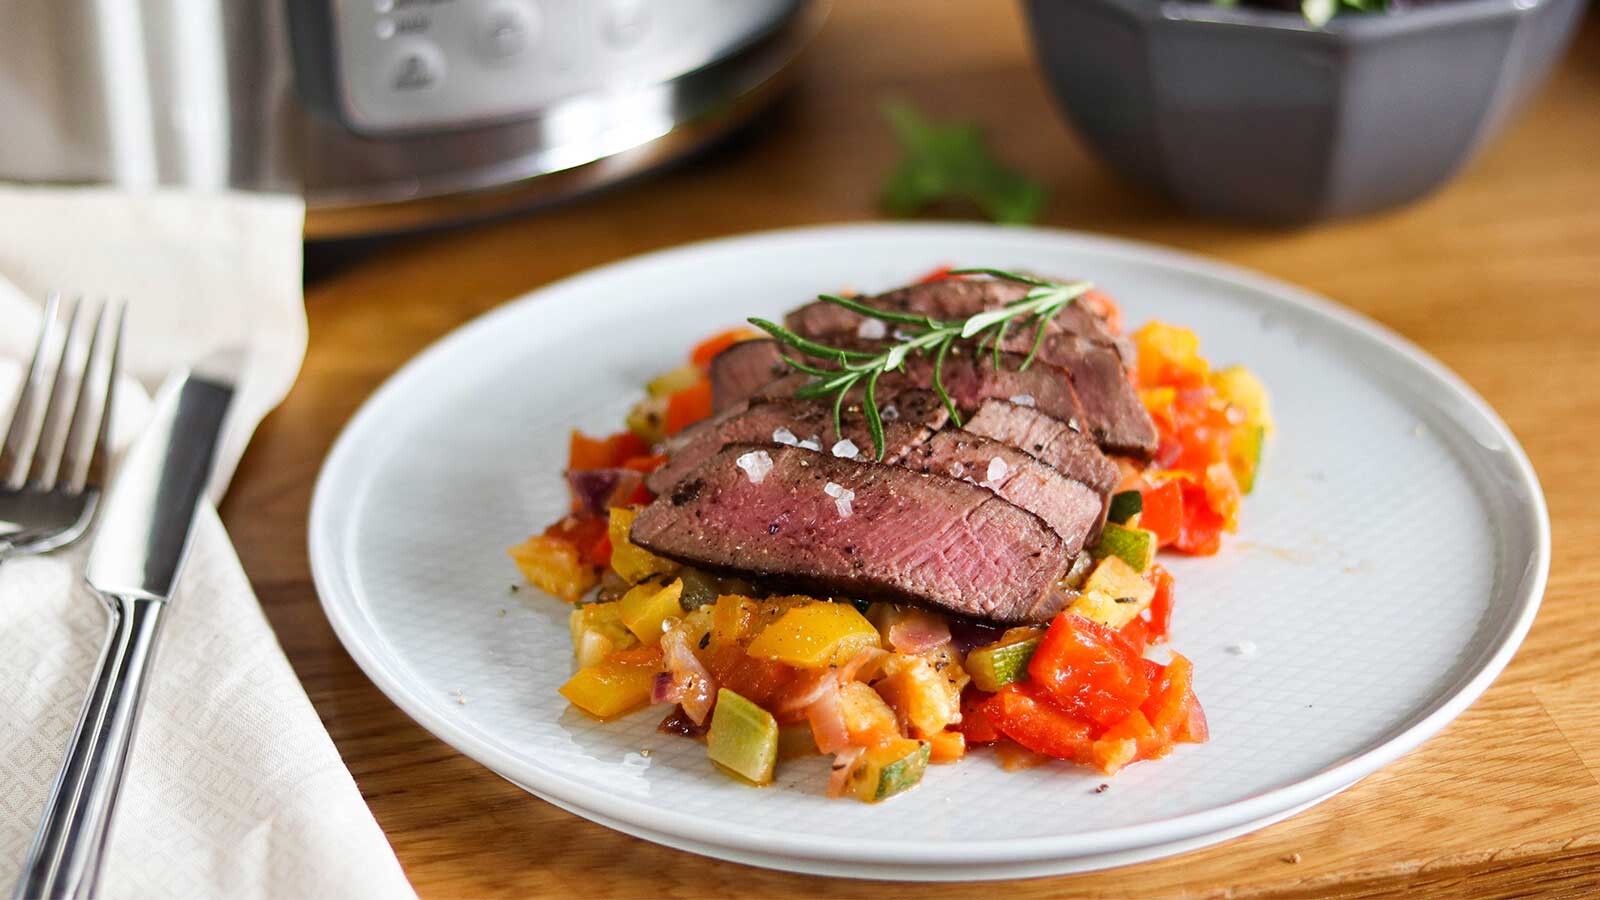 Hovězí steak sous-vide s ratatouille zeleninou